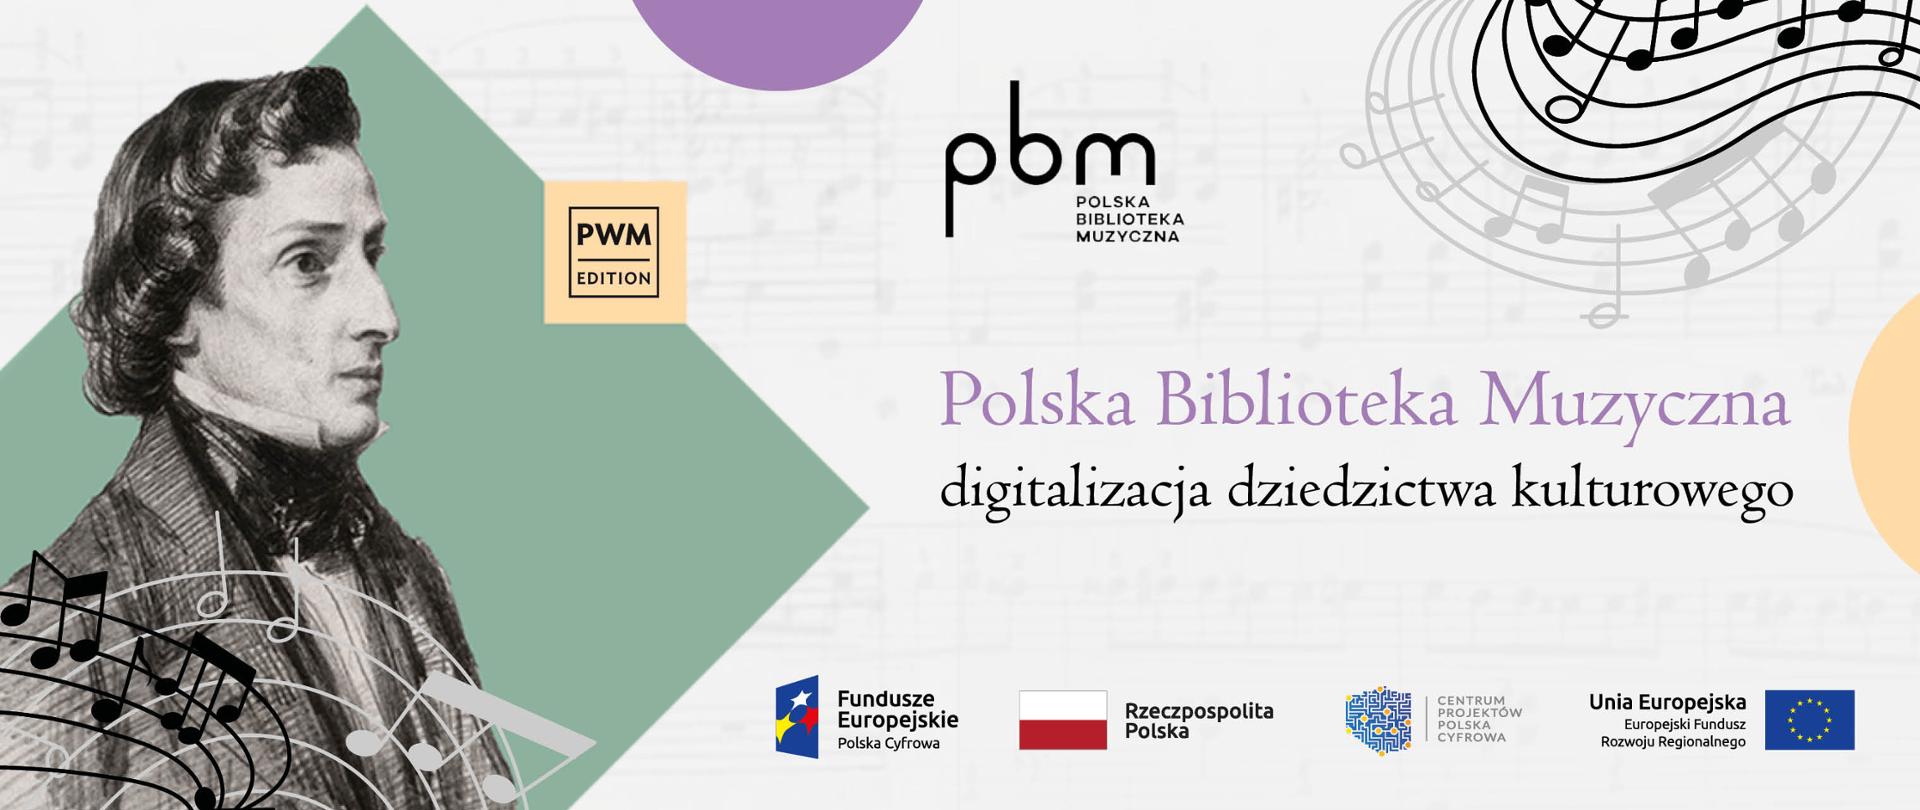 Polska Biblioteka Muzyczna - digitalizacja dziedzictwa kulturowego